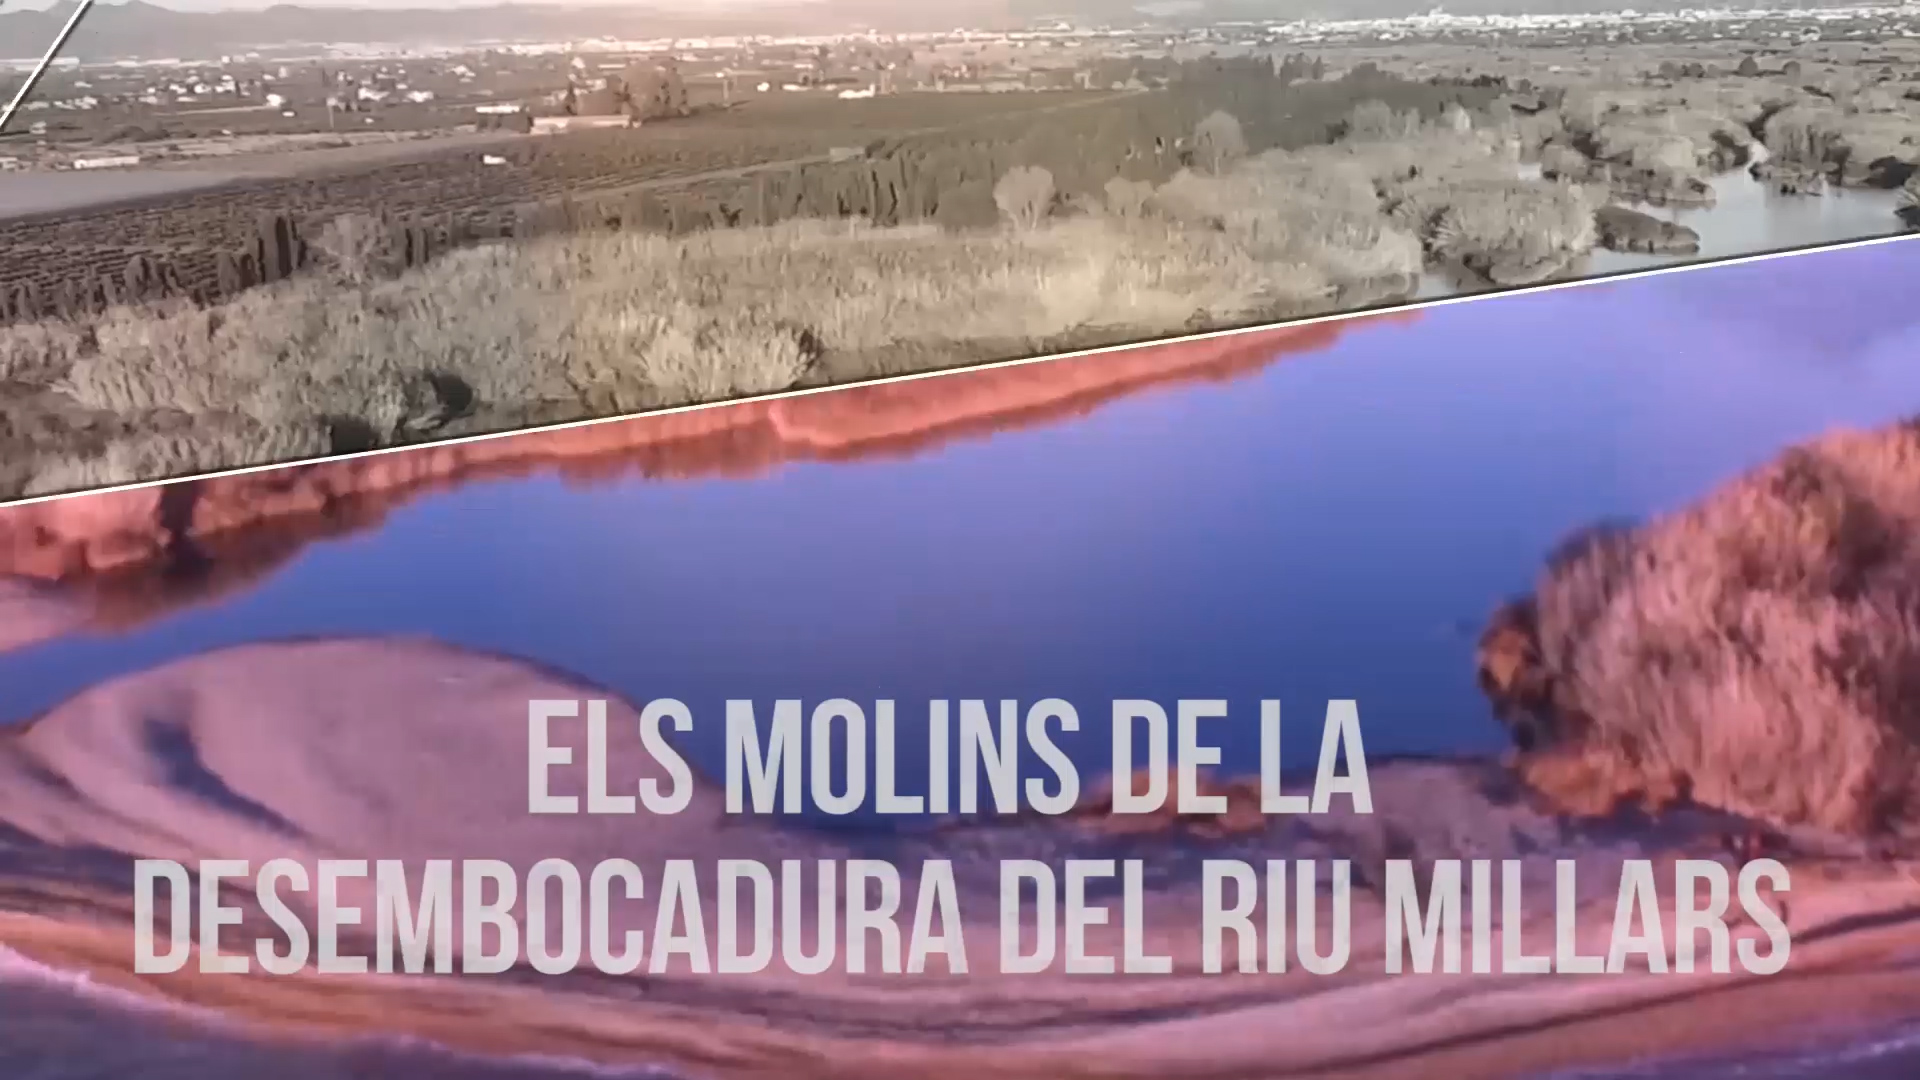 El Consorcio gestor del Paisaje Protegido de la Desembocadura del río Mijares muestra los molinos históricos